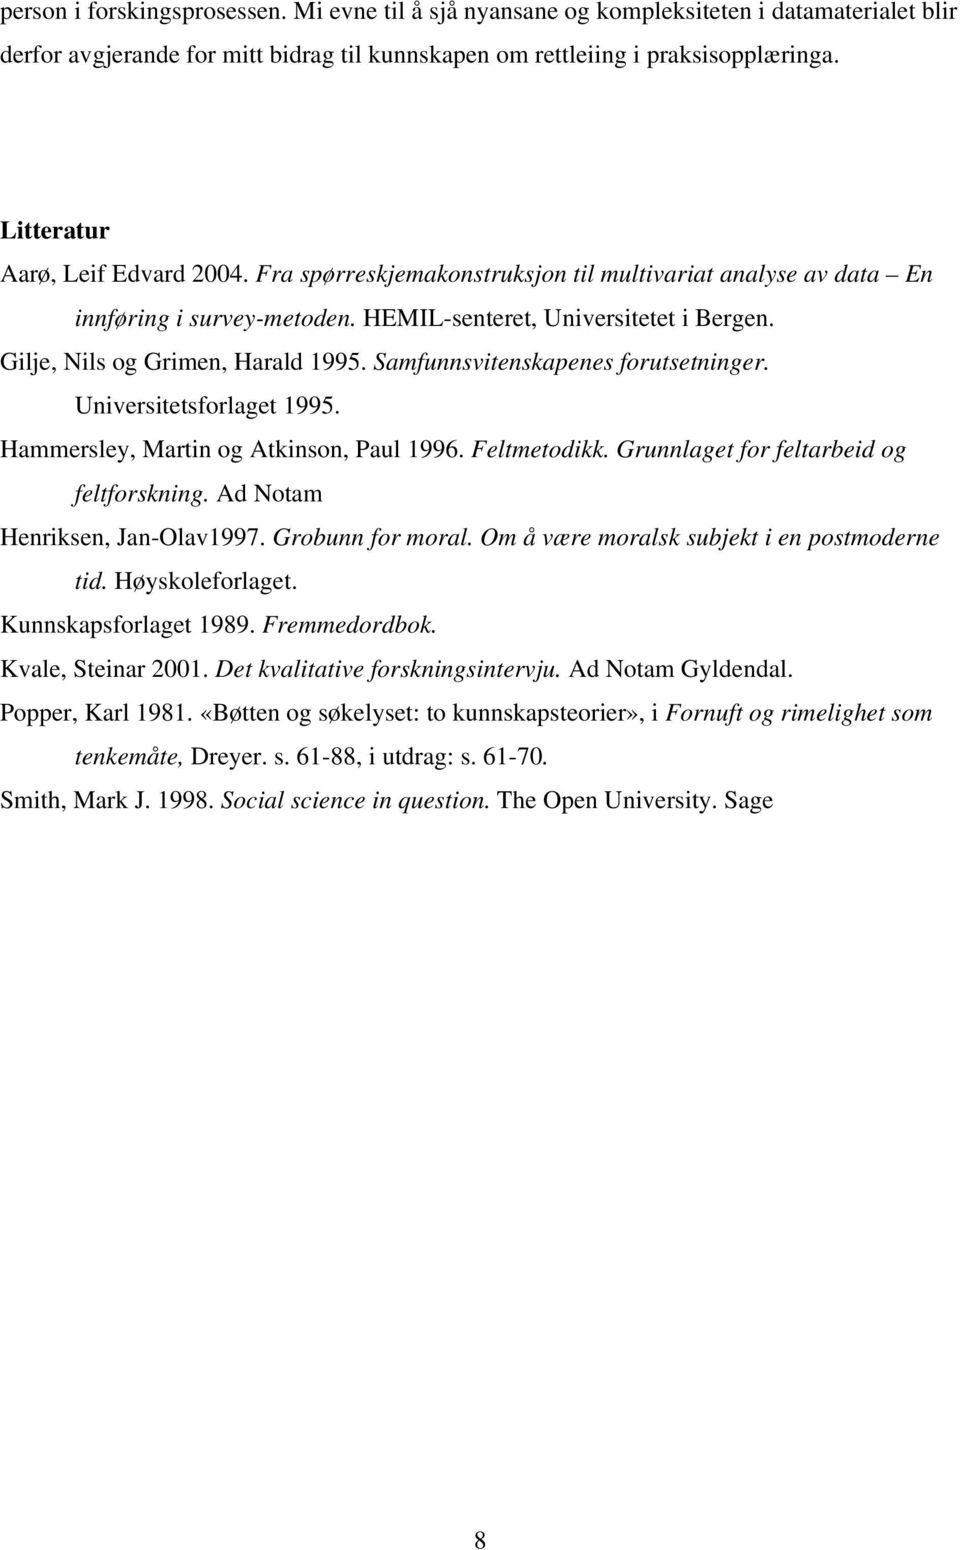 Gilje, Nils og Grimen, Harald 1995. Samfunnsvitenskapenes forutsetninger. Universitetsforlaget 1995. Hammersley, Martin og Atkinson, Paul 1996. Feltmetodikk.